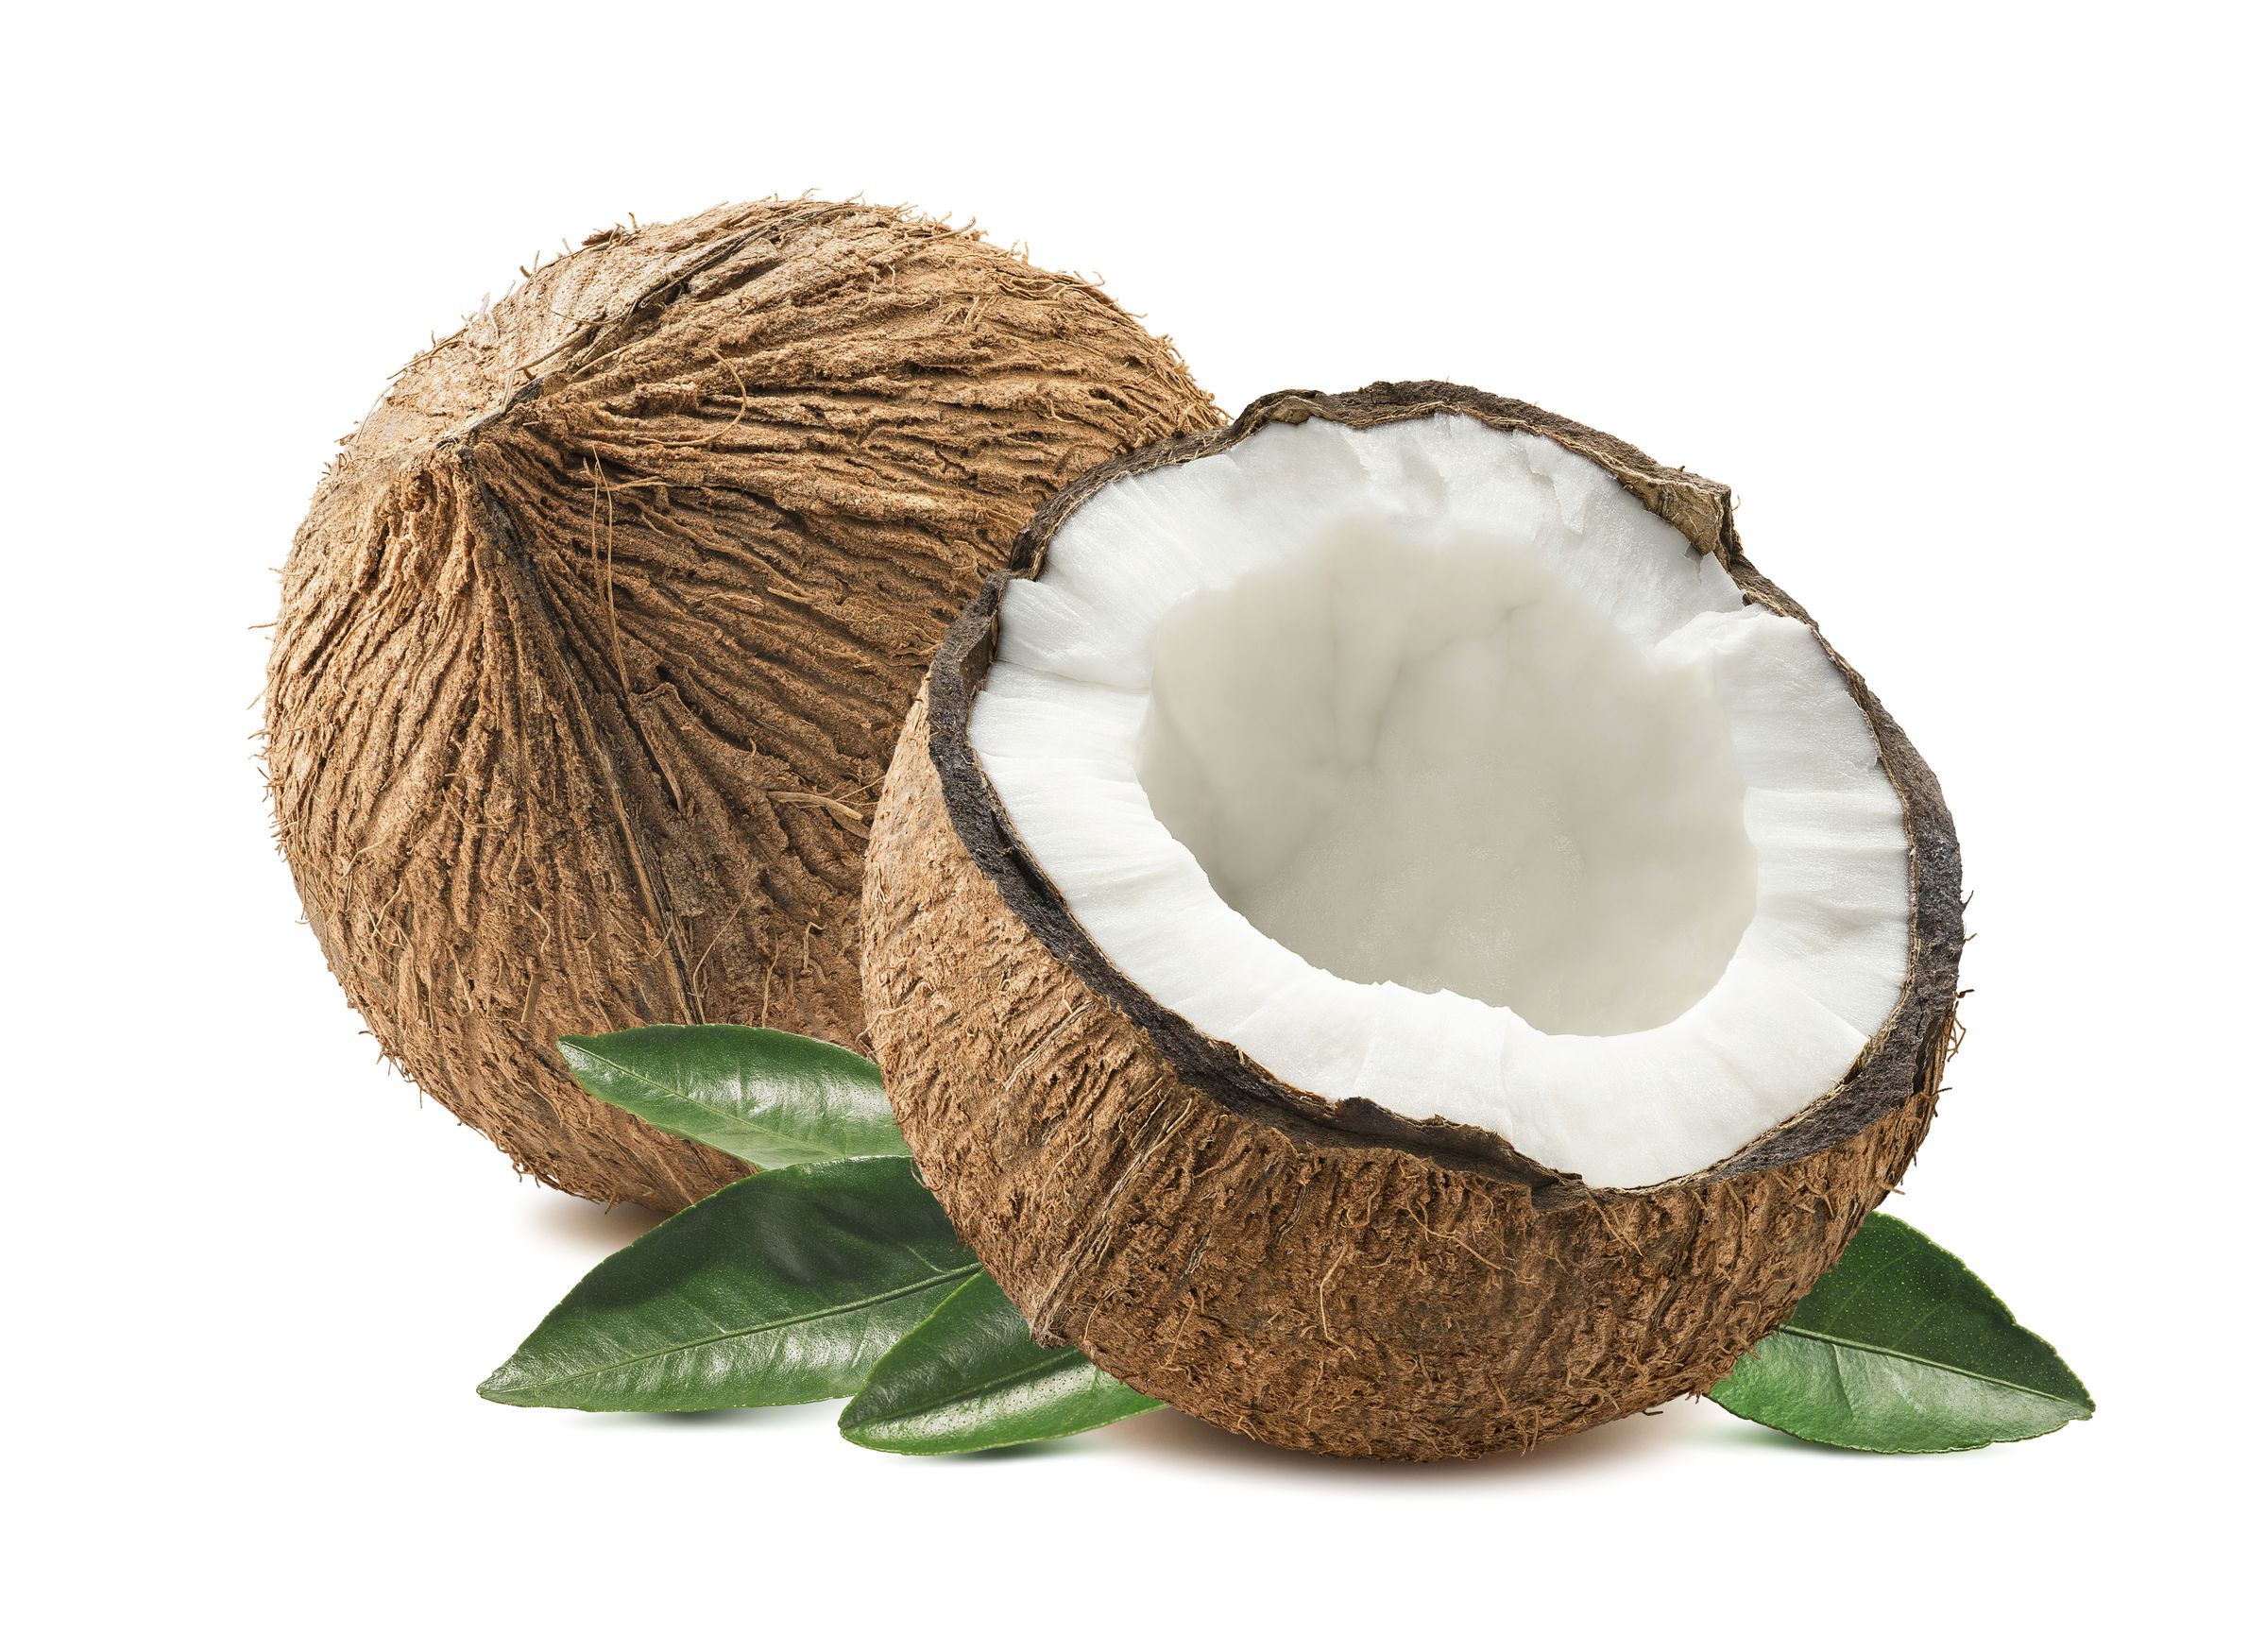 Acqua noci di cocco proprietà: benefici per la salute